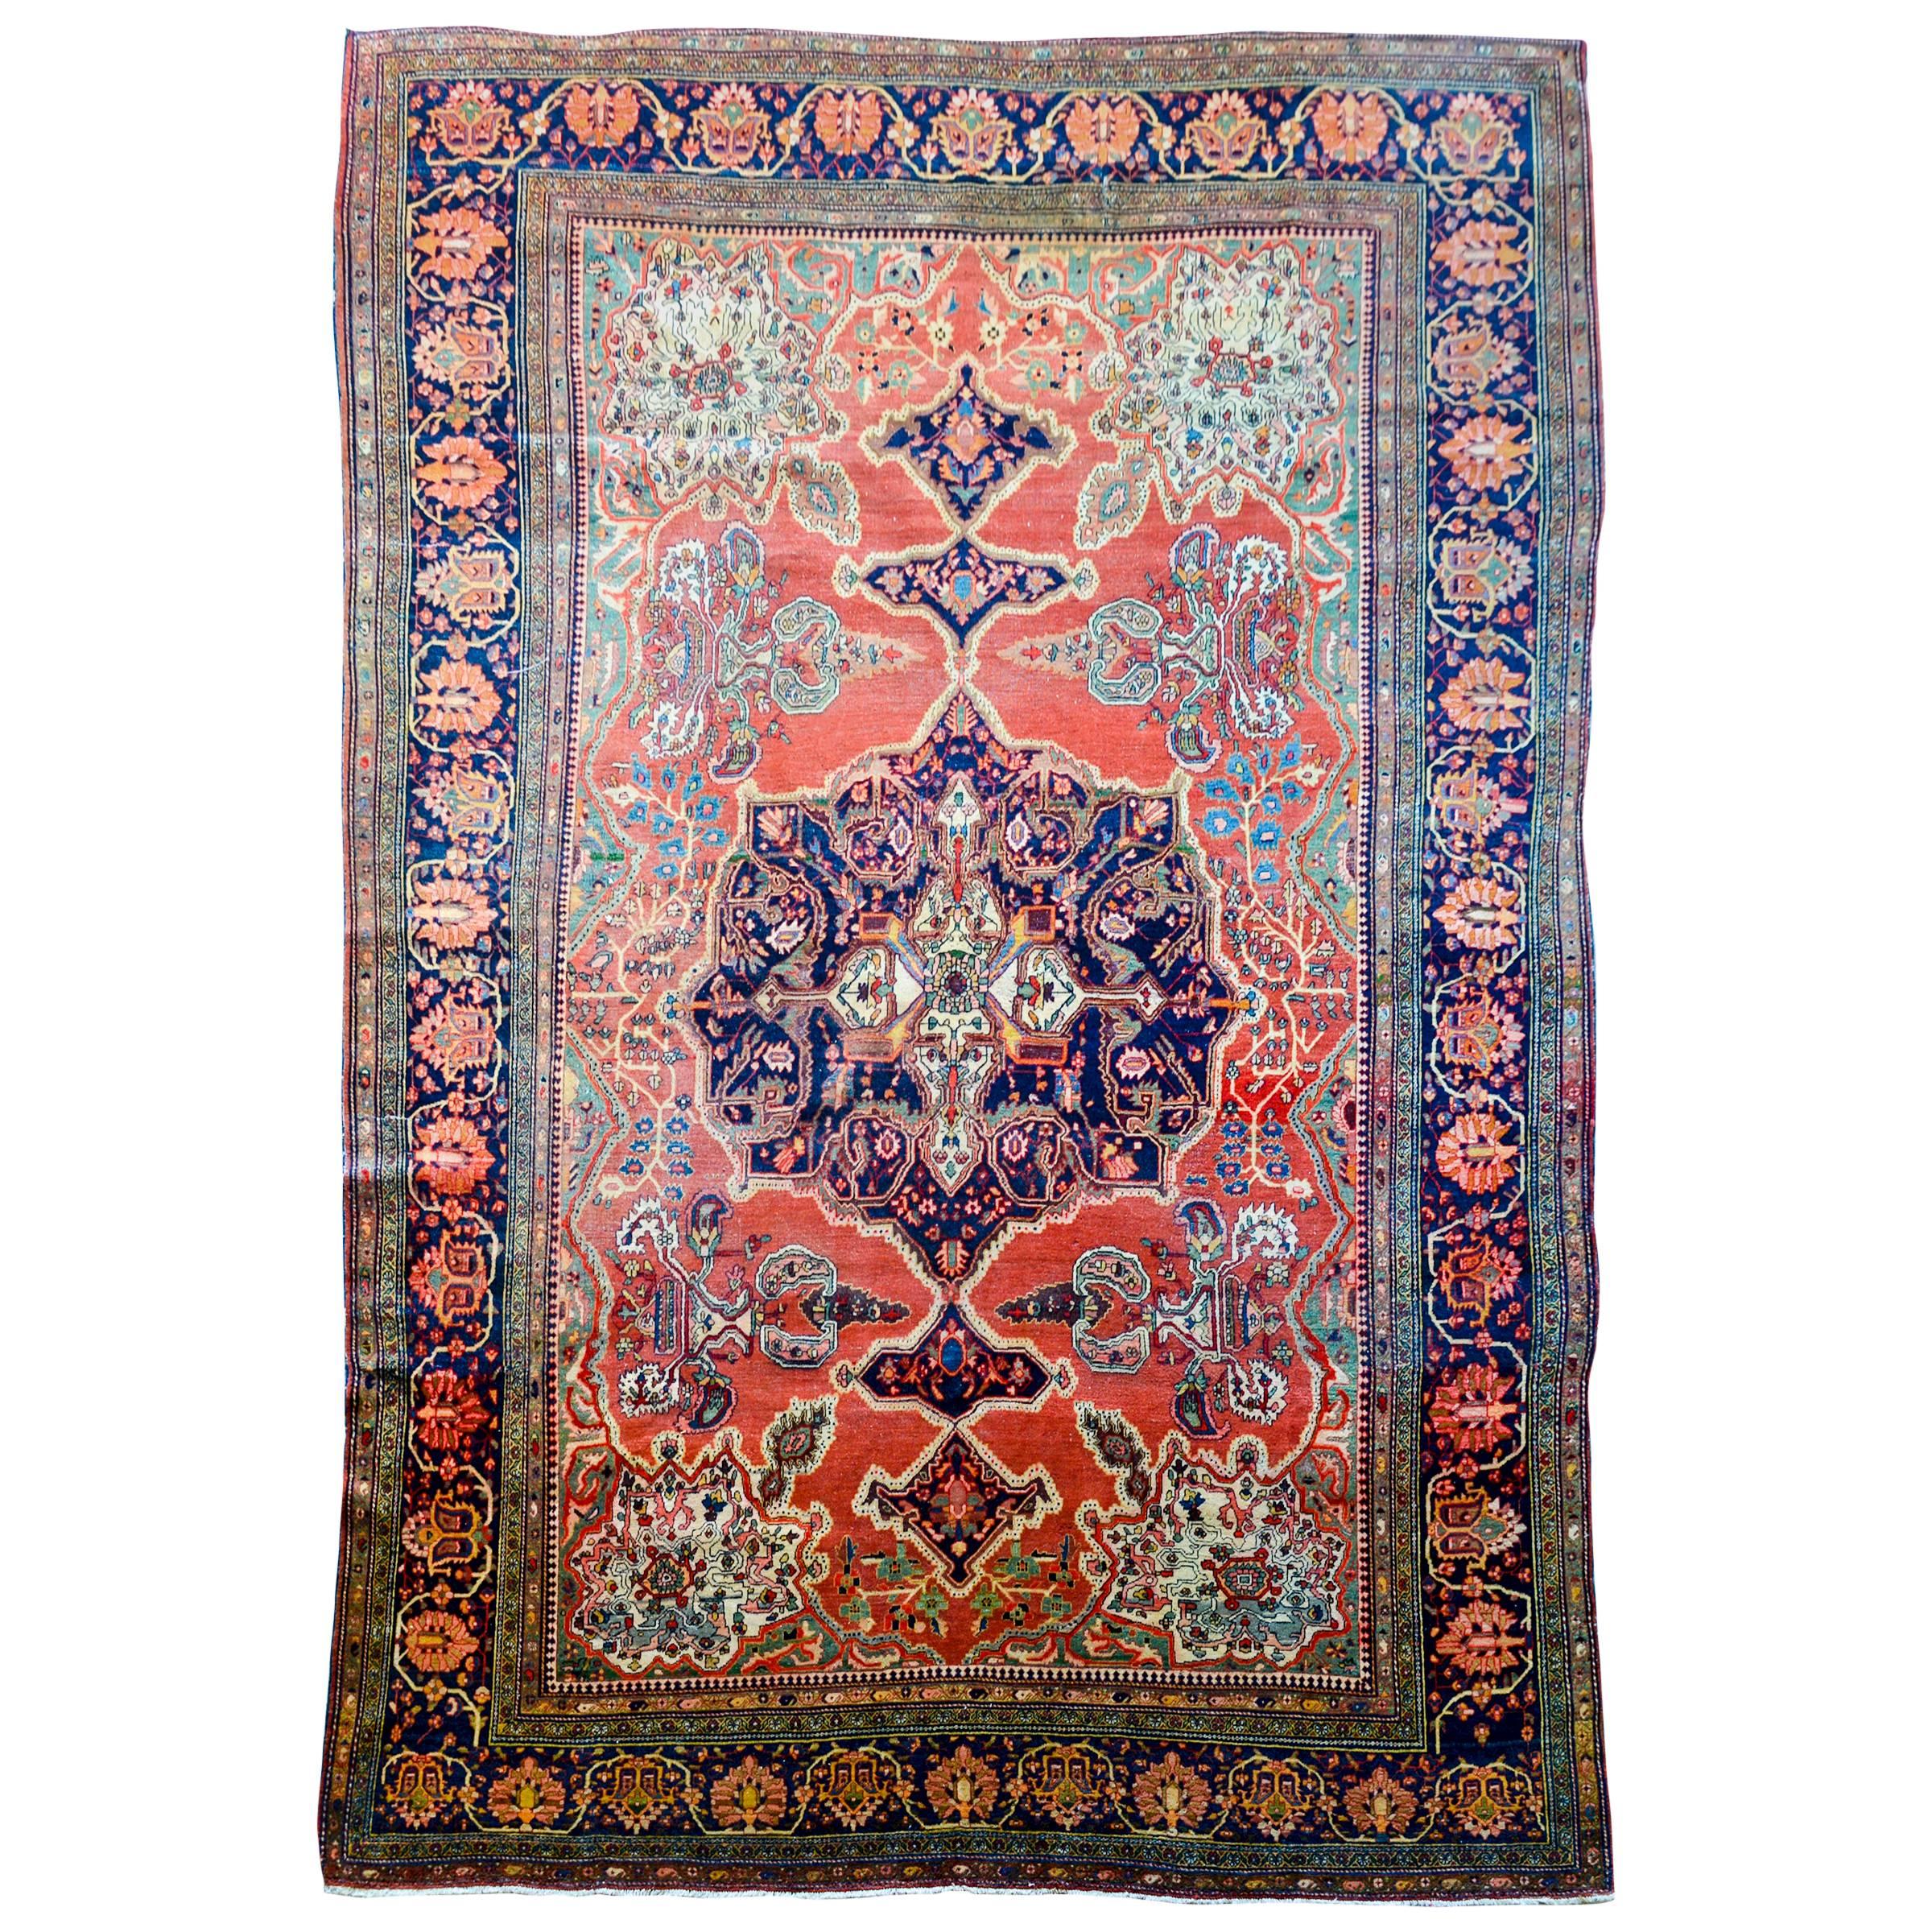 Unglaublicher Sarouk Farahan-Teppich aus dem 19. Jahrhundert